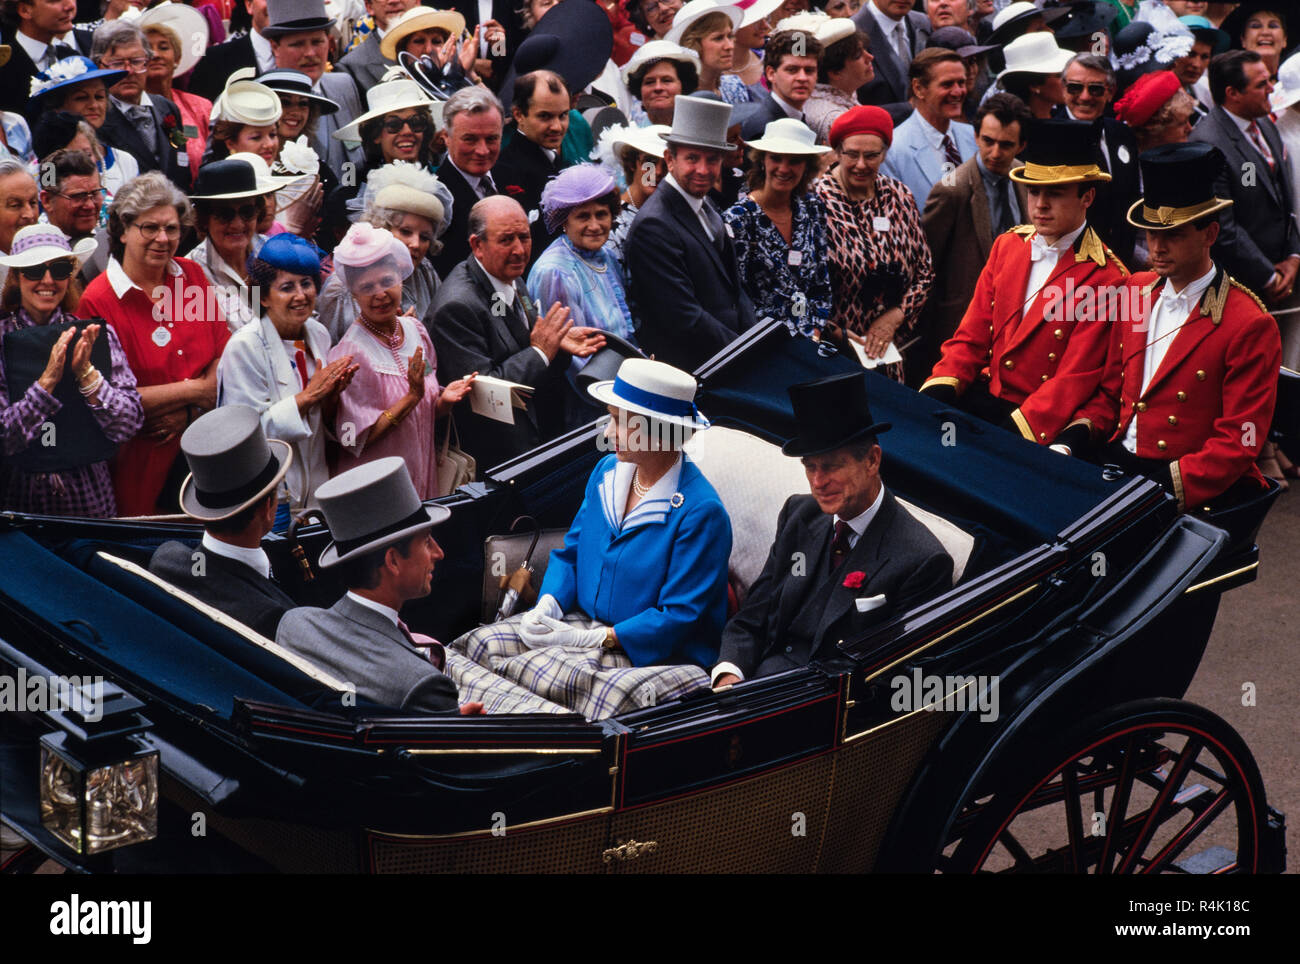 Les courses d'Ascot Angleterre UK 1986 numérisé en 2018 la famille royale britannique arriver et marcher environ à Royal Ascot en 1986. Sa Majesté la Reine Elizabeth II et le Prince Philip. Les membres du public vêtus de beaux chapeaux et chapeaux haut et la queue pour les hommes de Royal Ascot. Banque D'Images